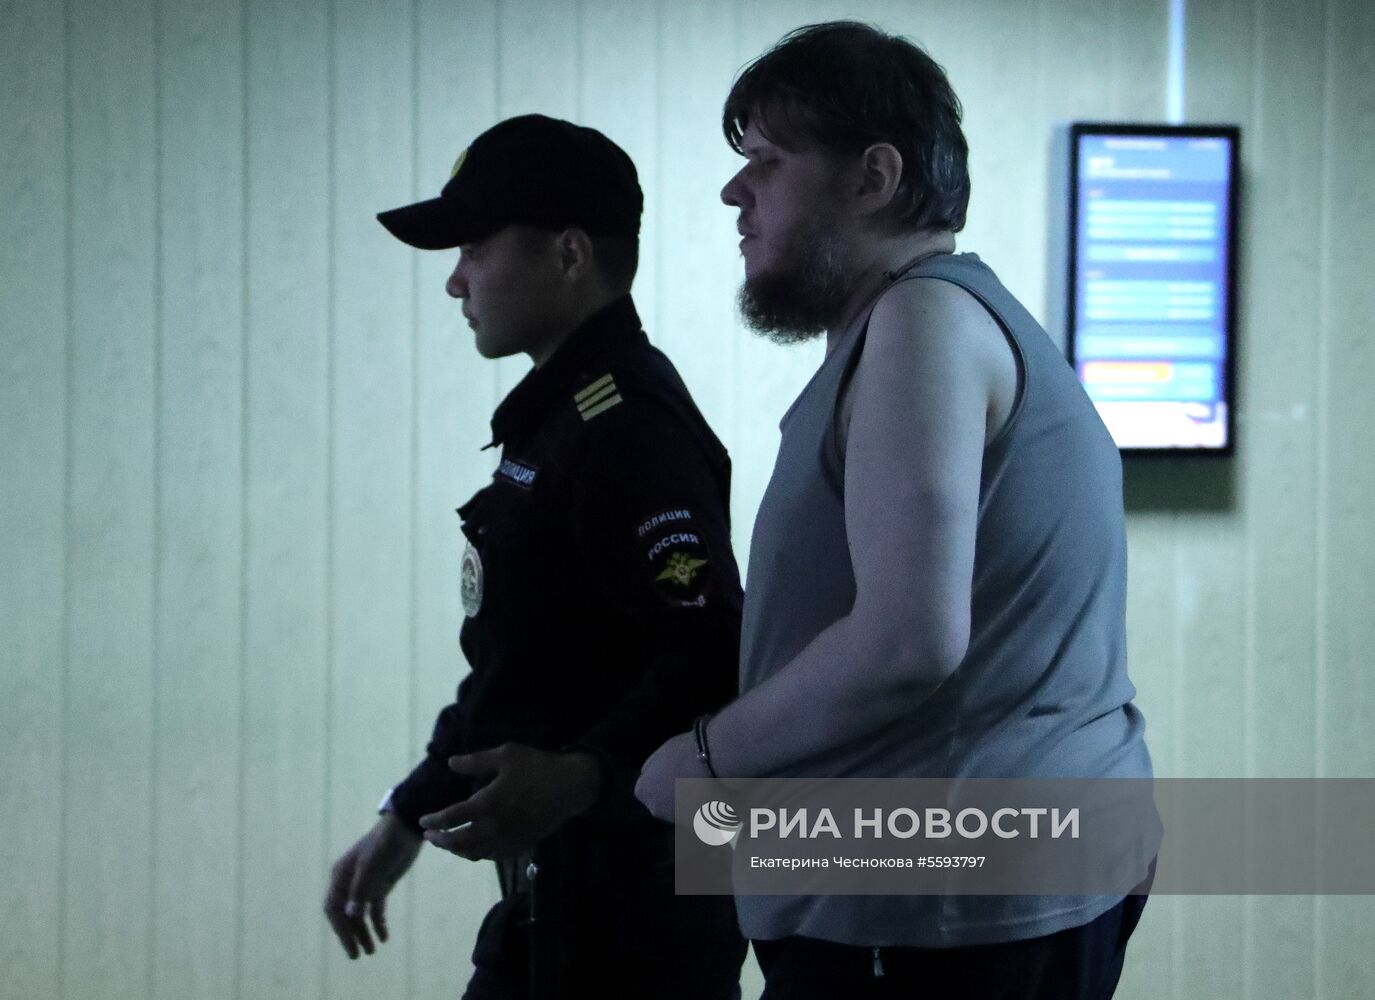 Оглашение приговора А. Попову лидеру секты "бога Кузи" 